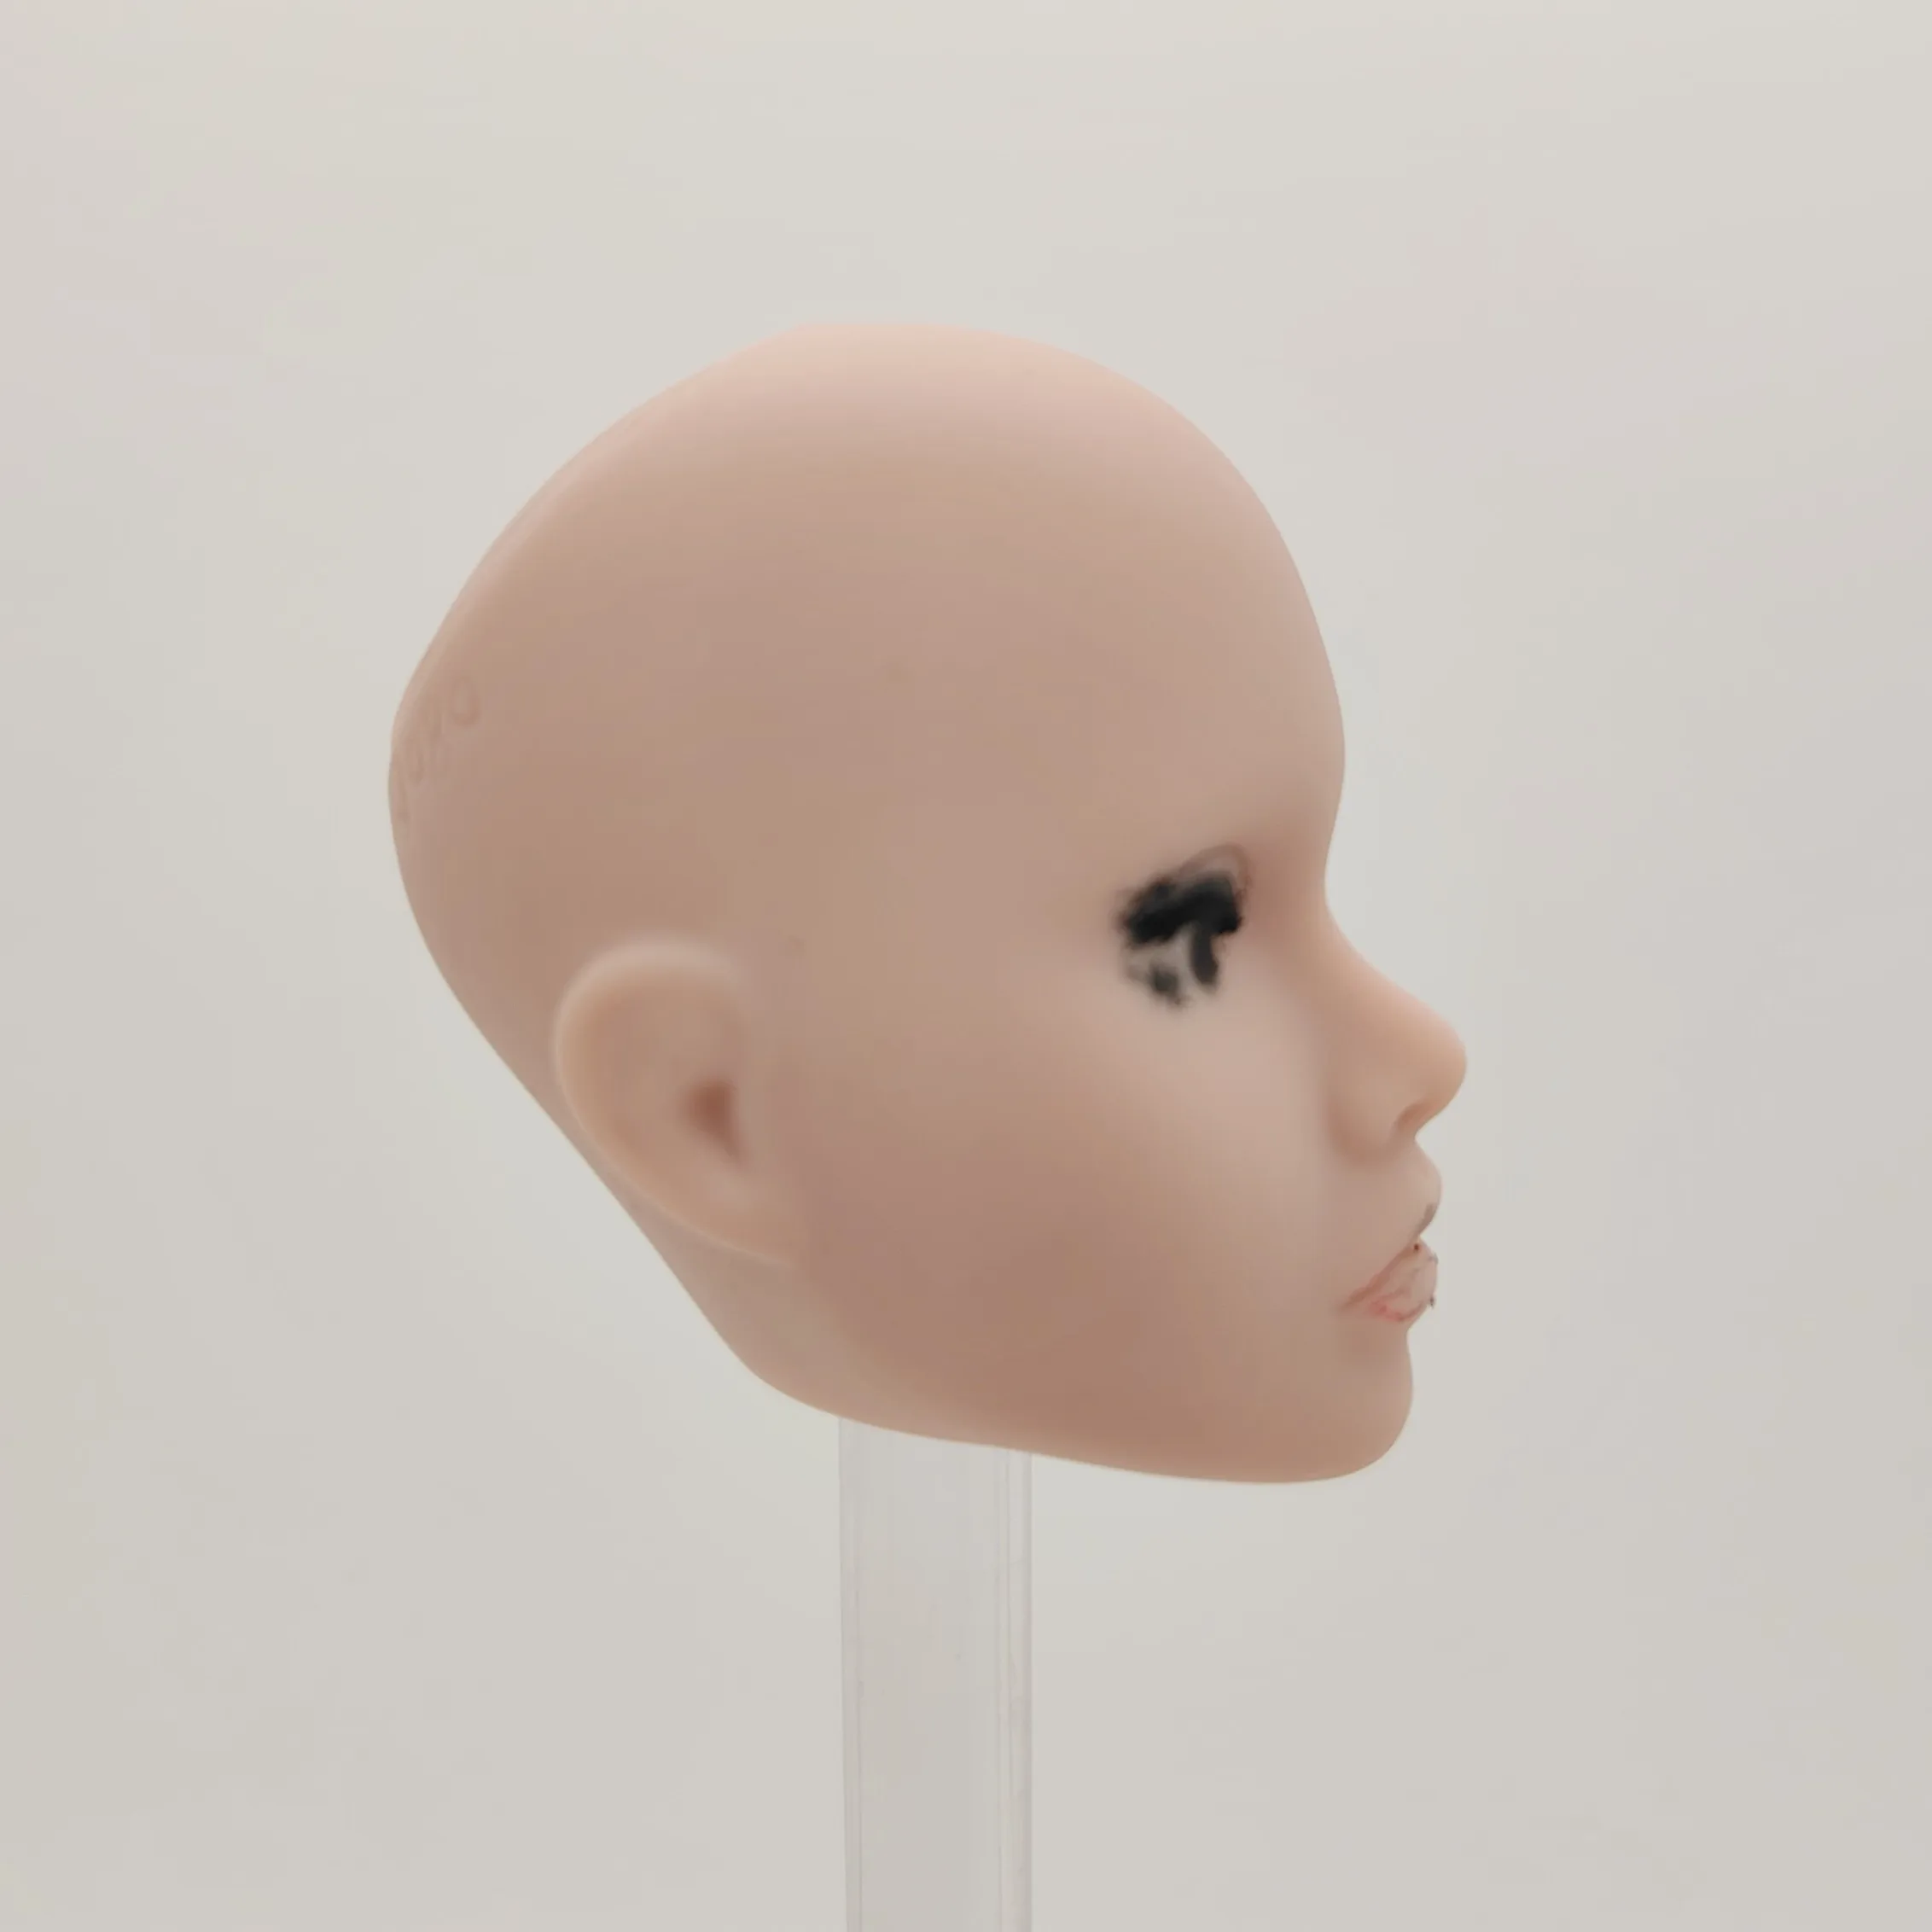 Fashion Royalty Poppy Parker Без Волос 1/6 Масштаб Неокрашенная Пластиковая Кукольная Голова Изображение 5